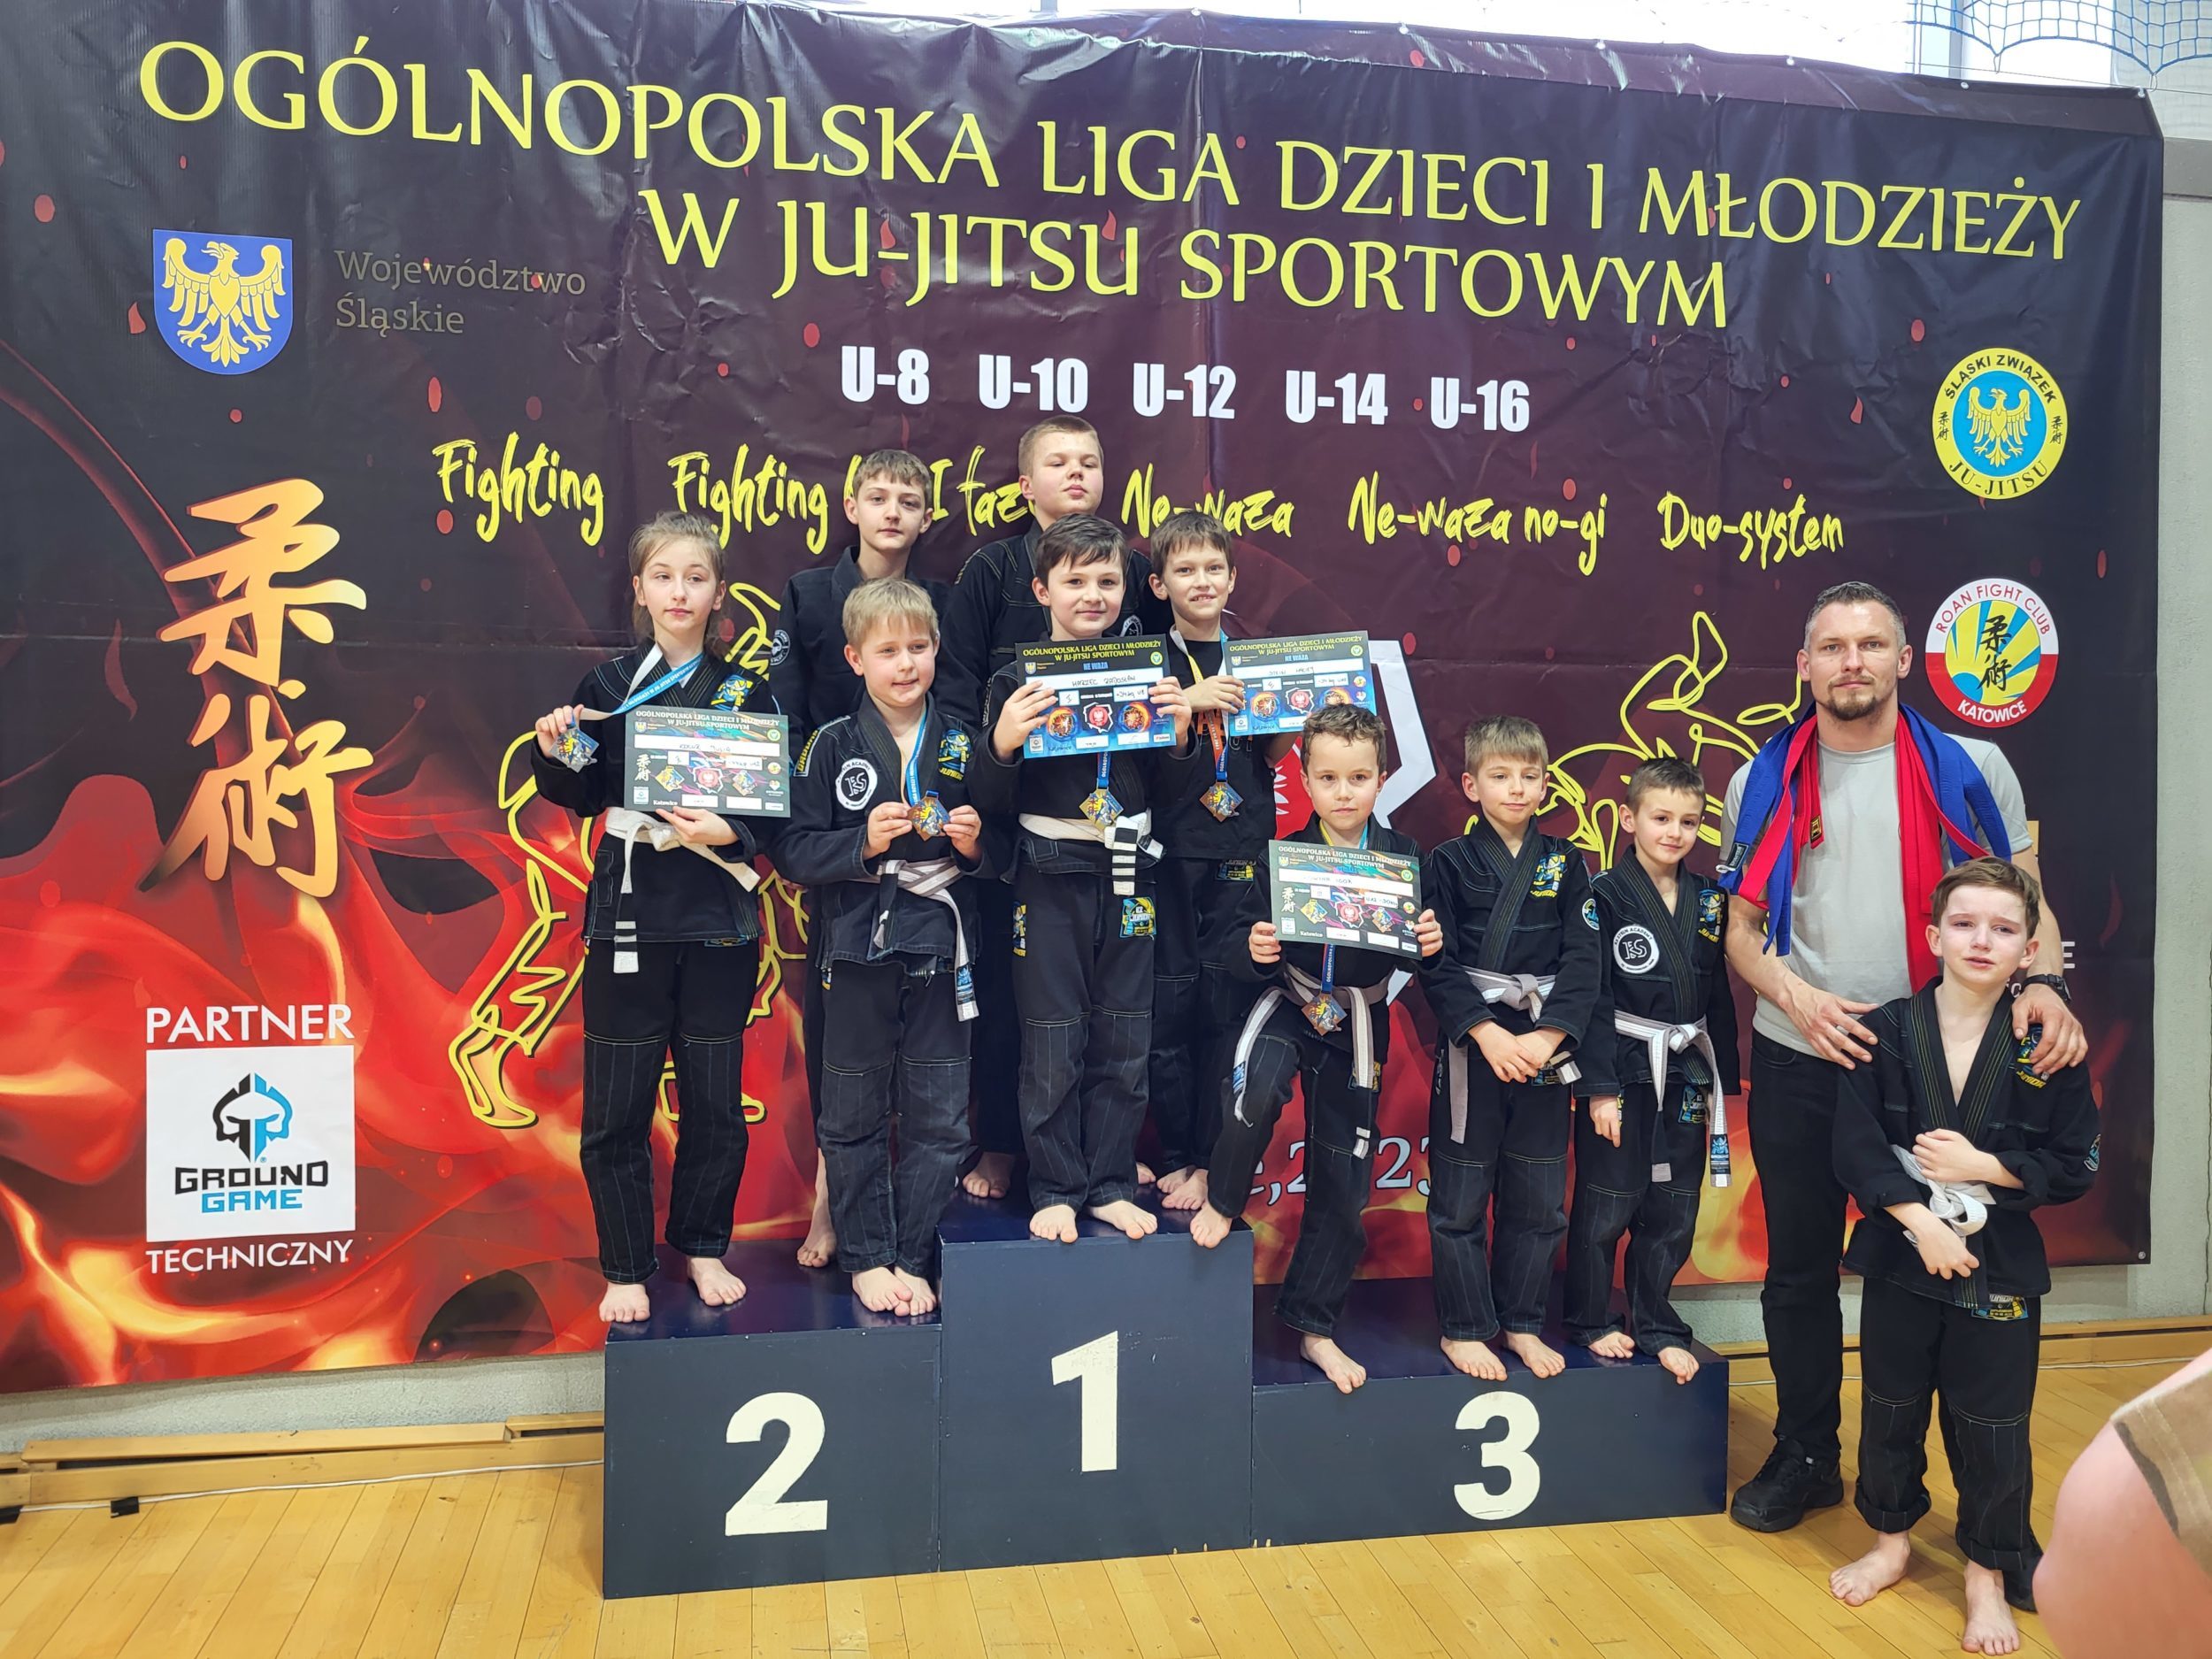 8 medali na OgólnoPolskiej Lidze Ju-Jitsu dzieci i młodzieży